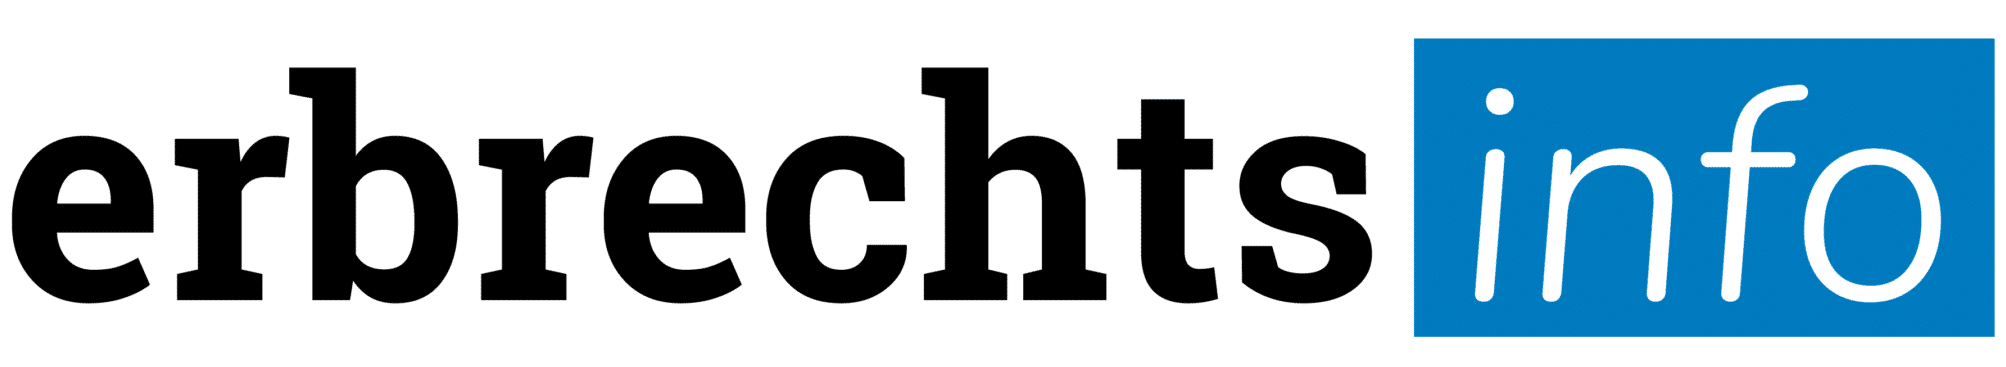 Erbrechtsinfo.ch Logo